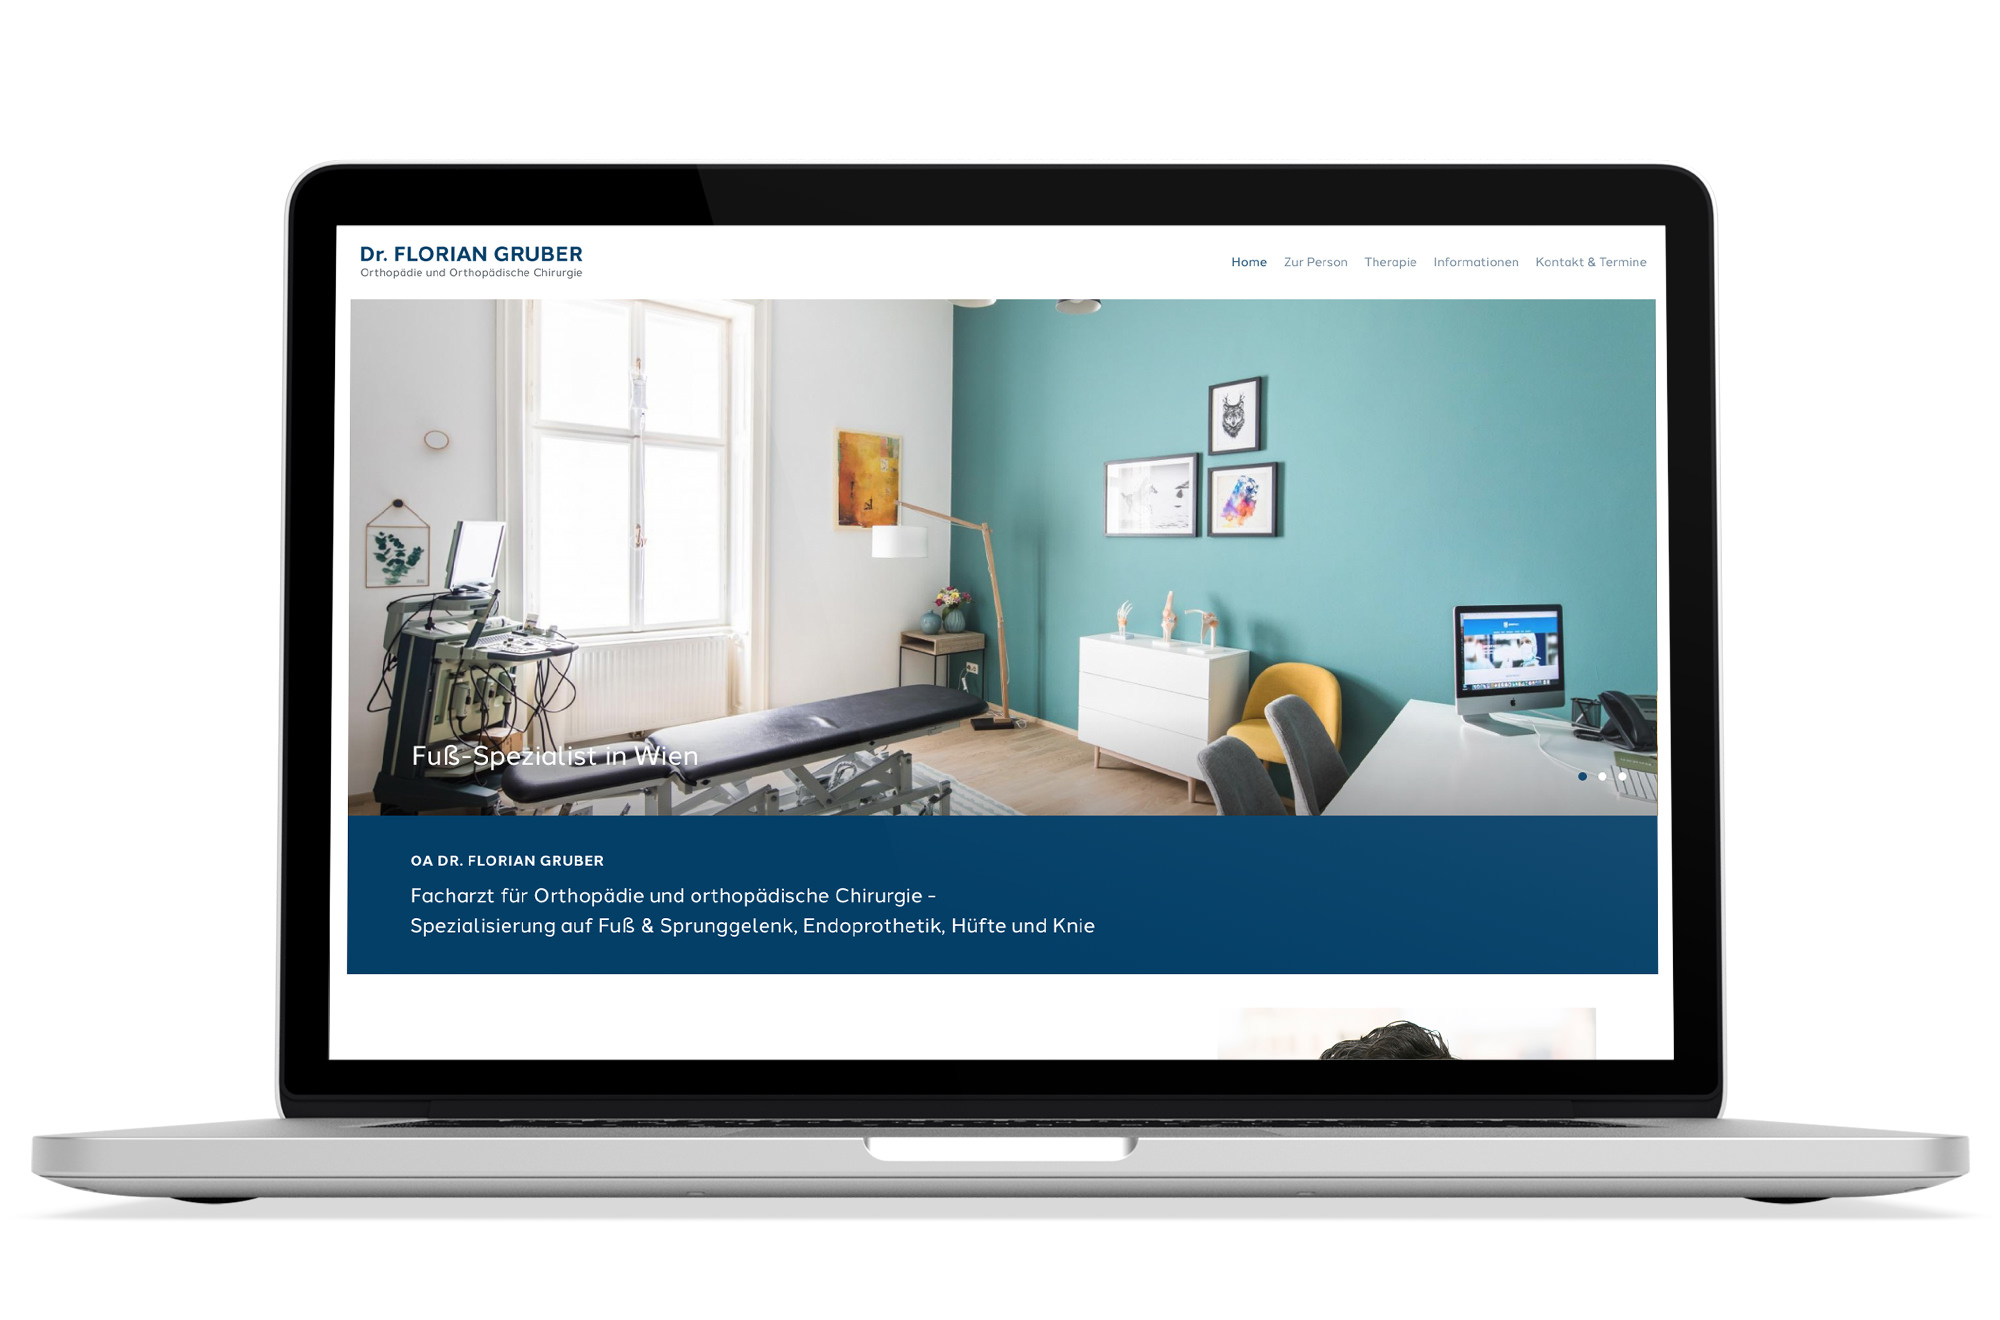 Responsive Webdesign Beispiel: Neue mobile Webseite für Facharzt für Orthopädie